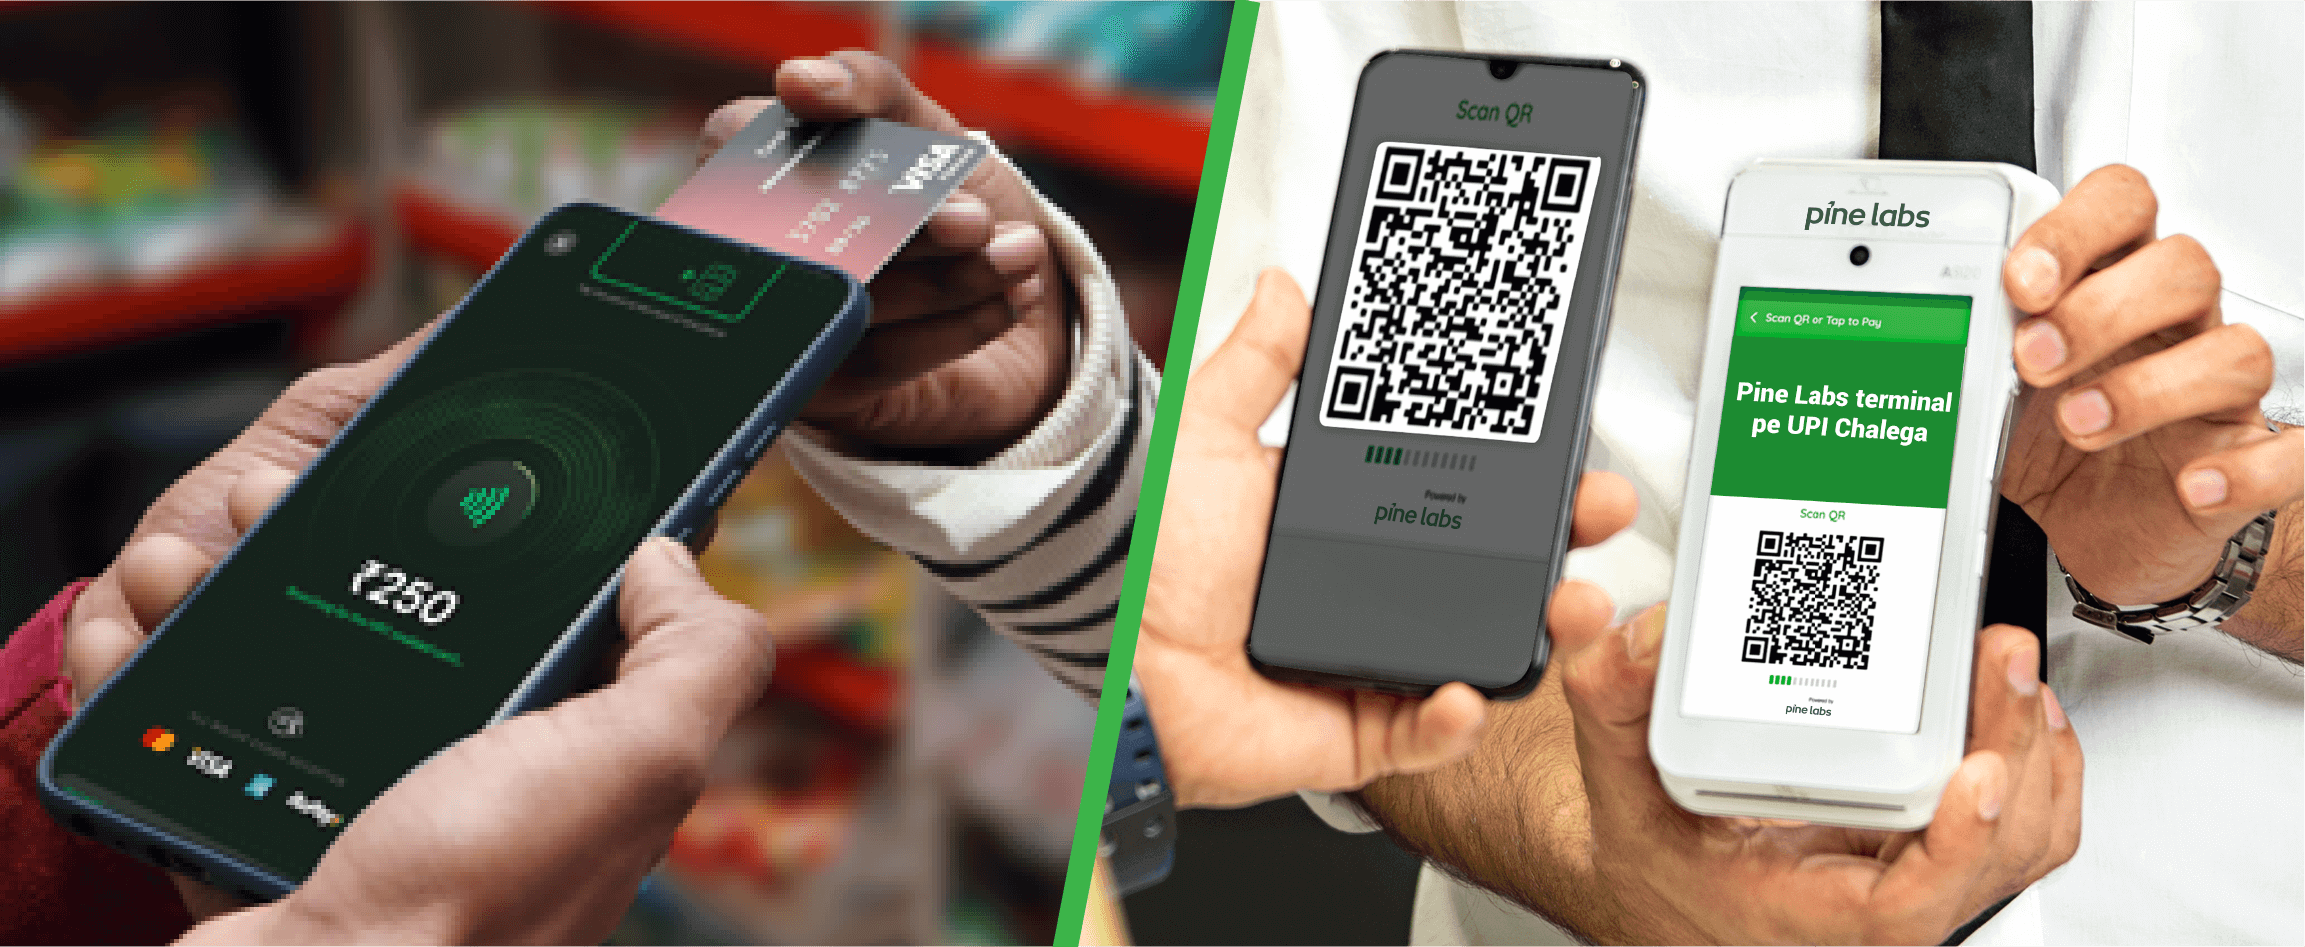 upi scan qr codes for digital payment